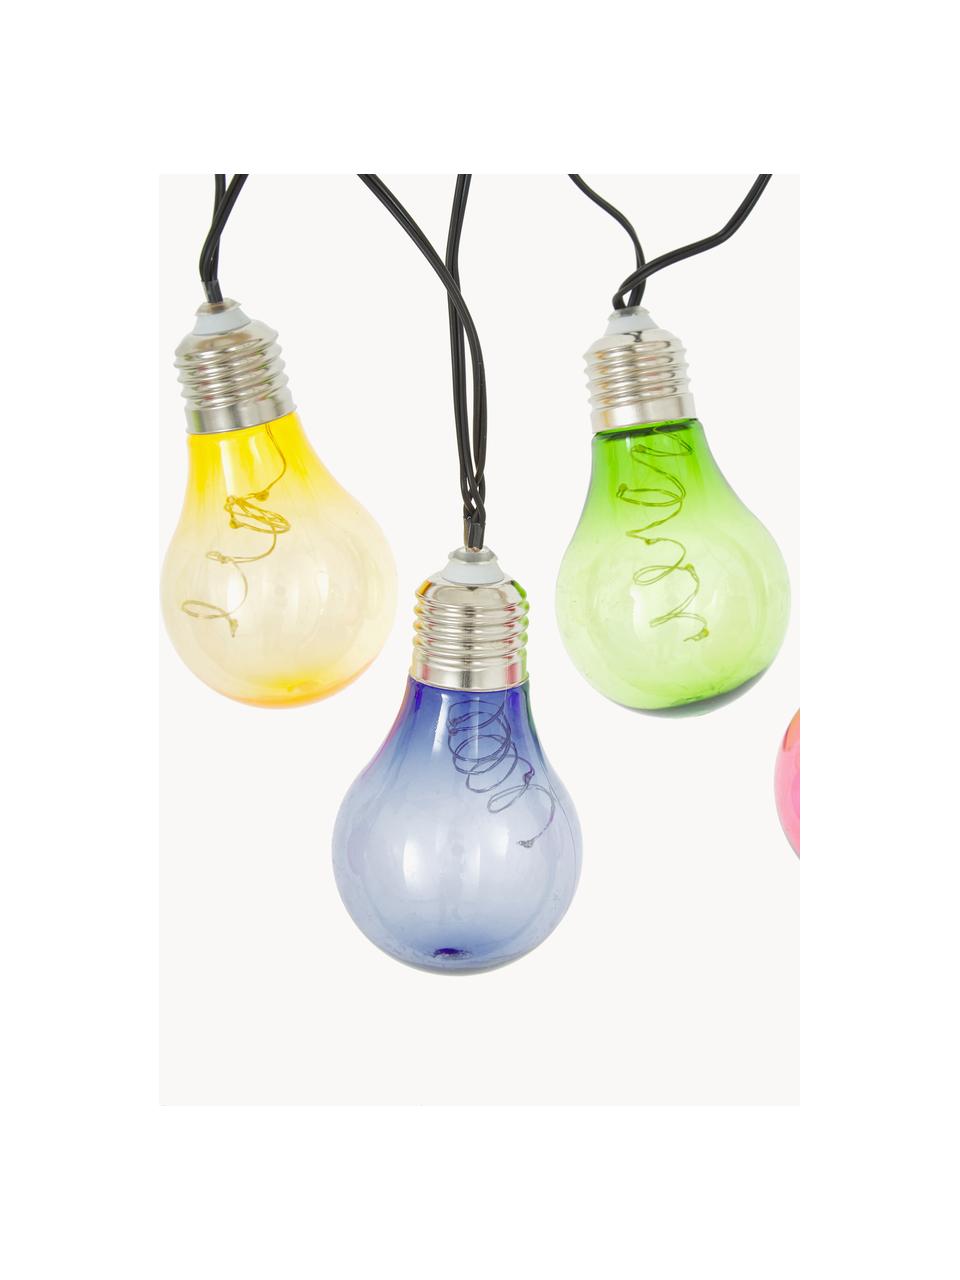 Guirnalda de luces solares LED Glow, 150 cm, Casquillo: acero inoxidable, Cable: plástico, Multicolor, L 150 cm